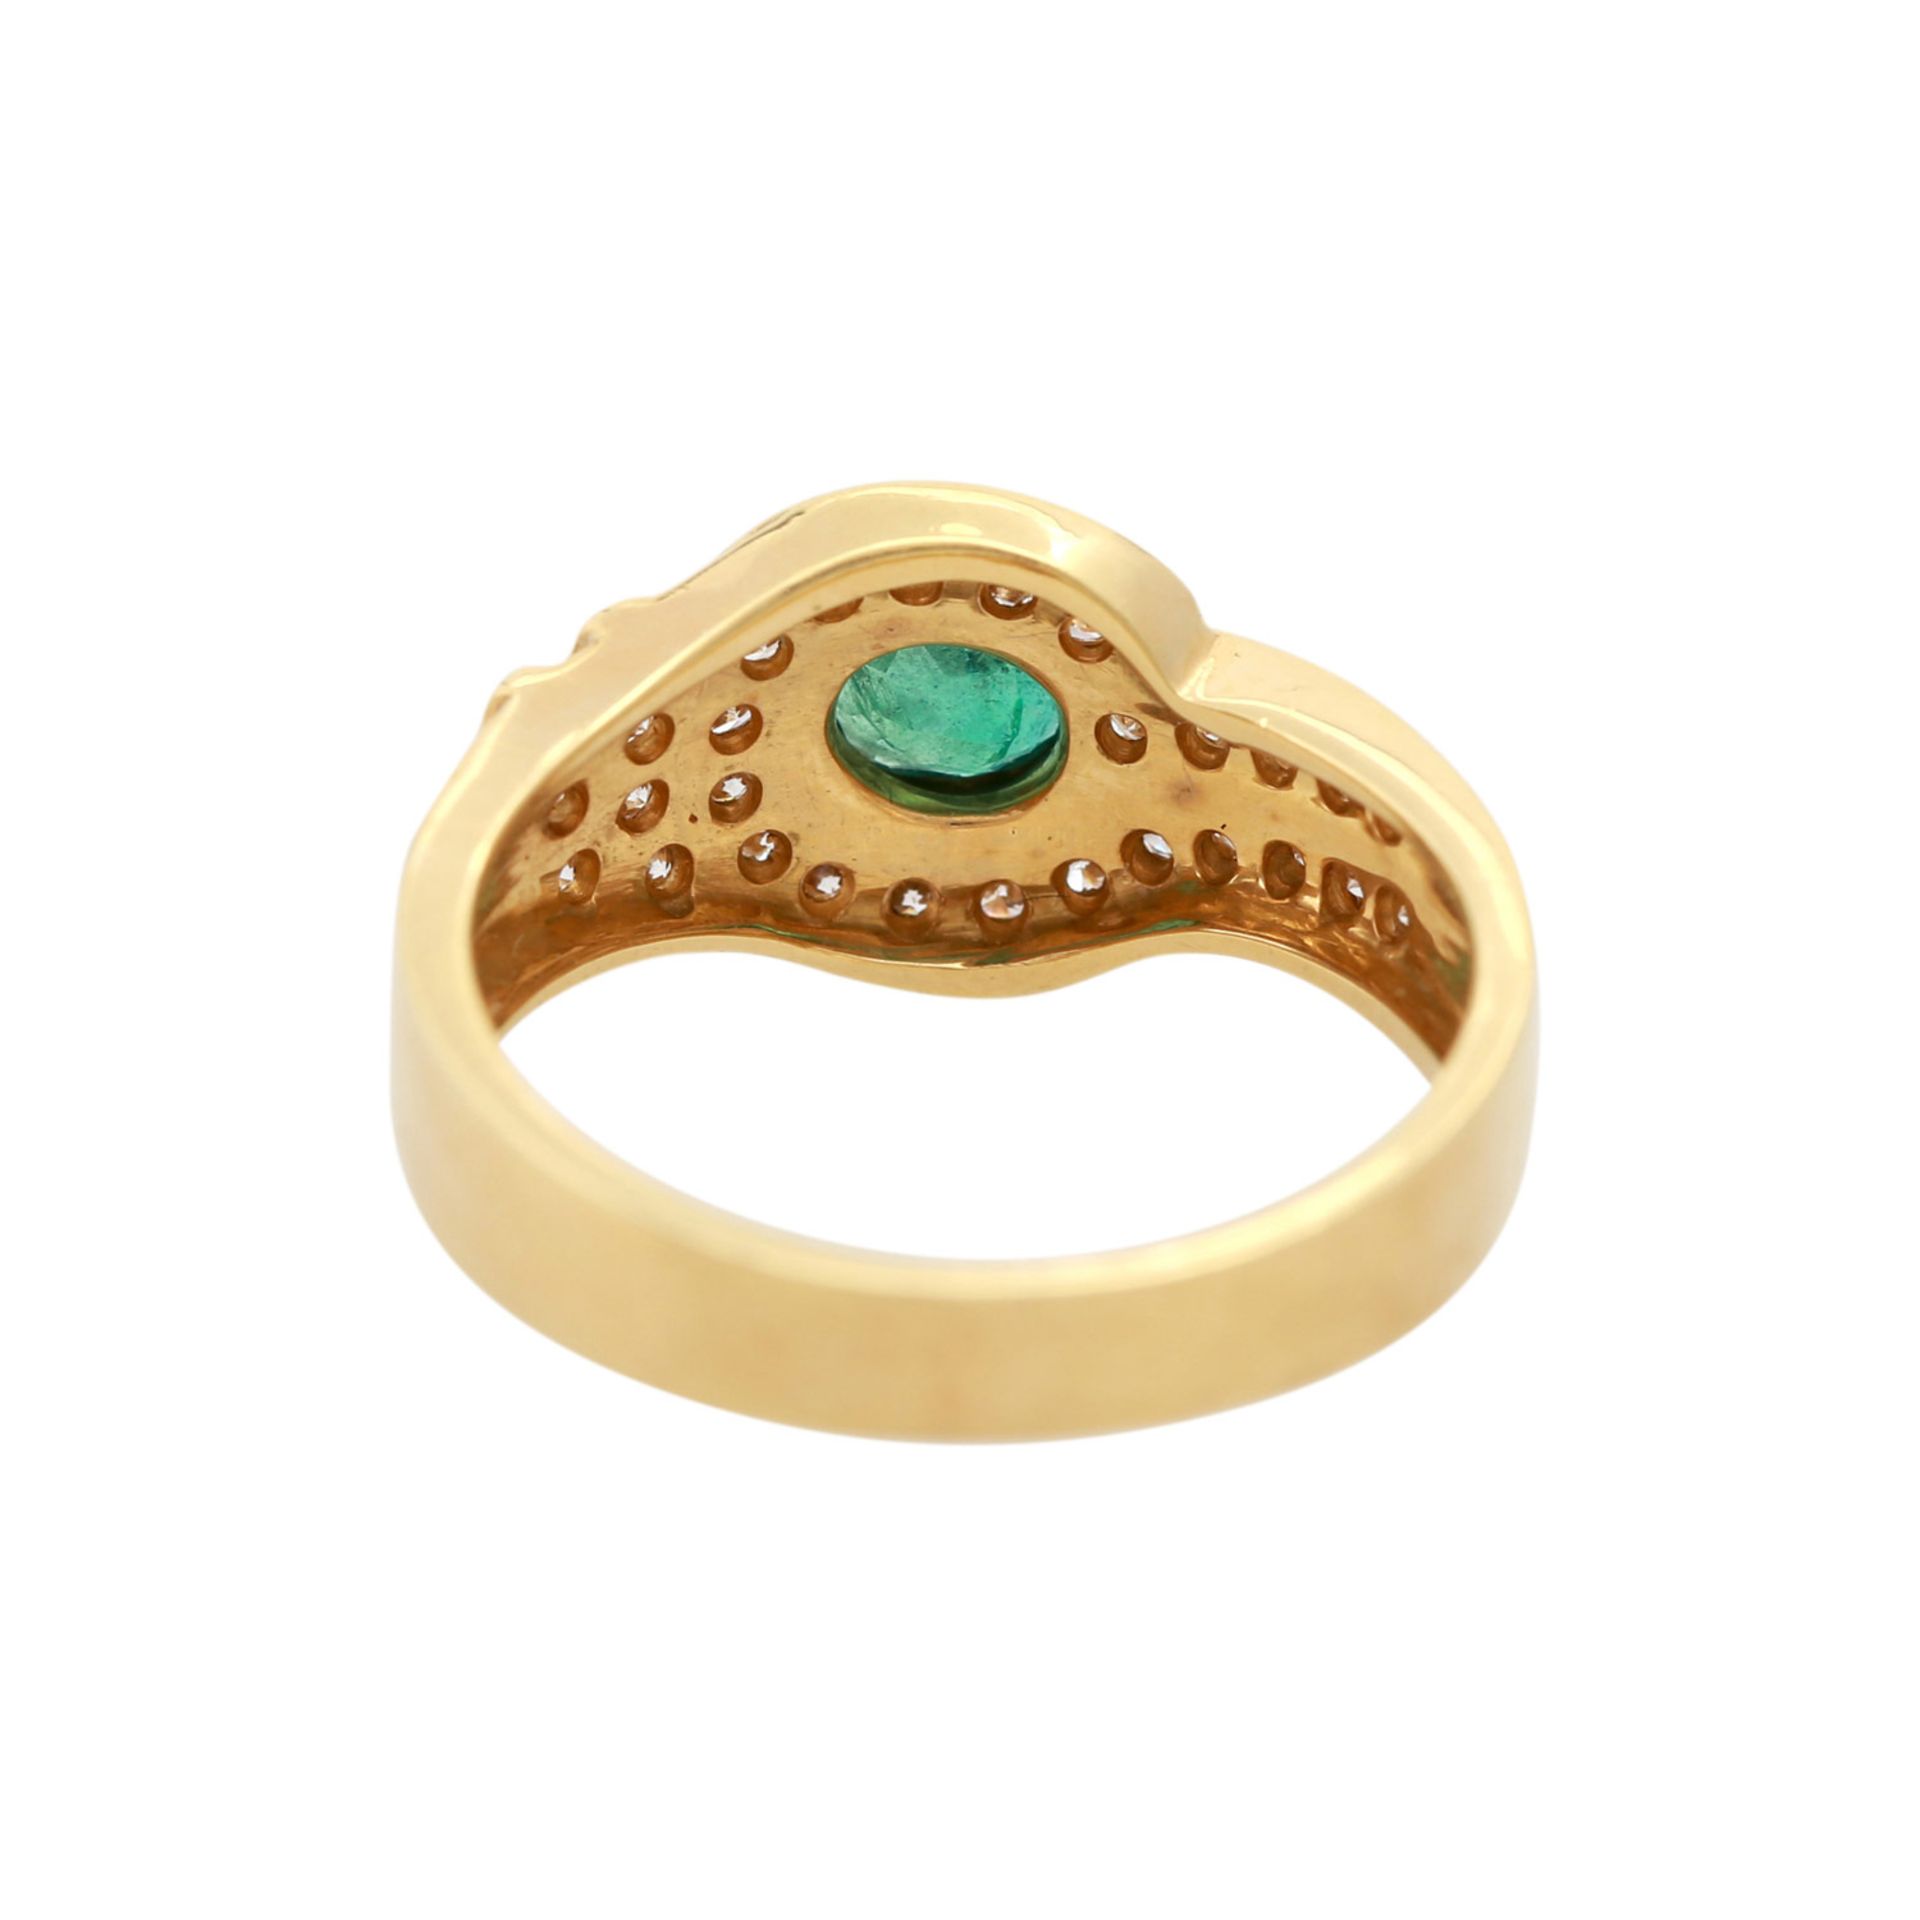 Damenring besetzt mit 1 ovalfac. Smaragd sowie kl. Brillanten zus. ca. 0,38 ct, WG 18K. Ringgröße - Bild 4 aus 4